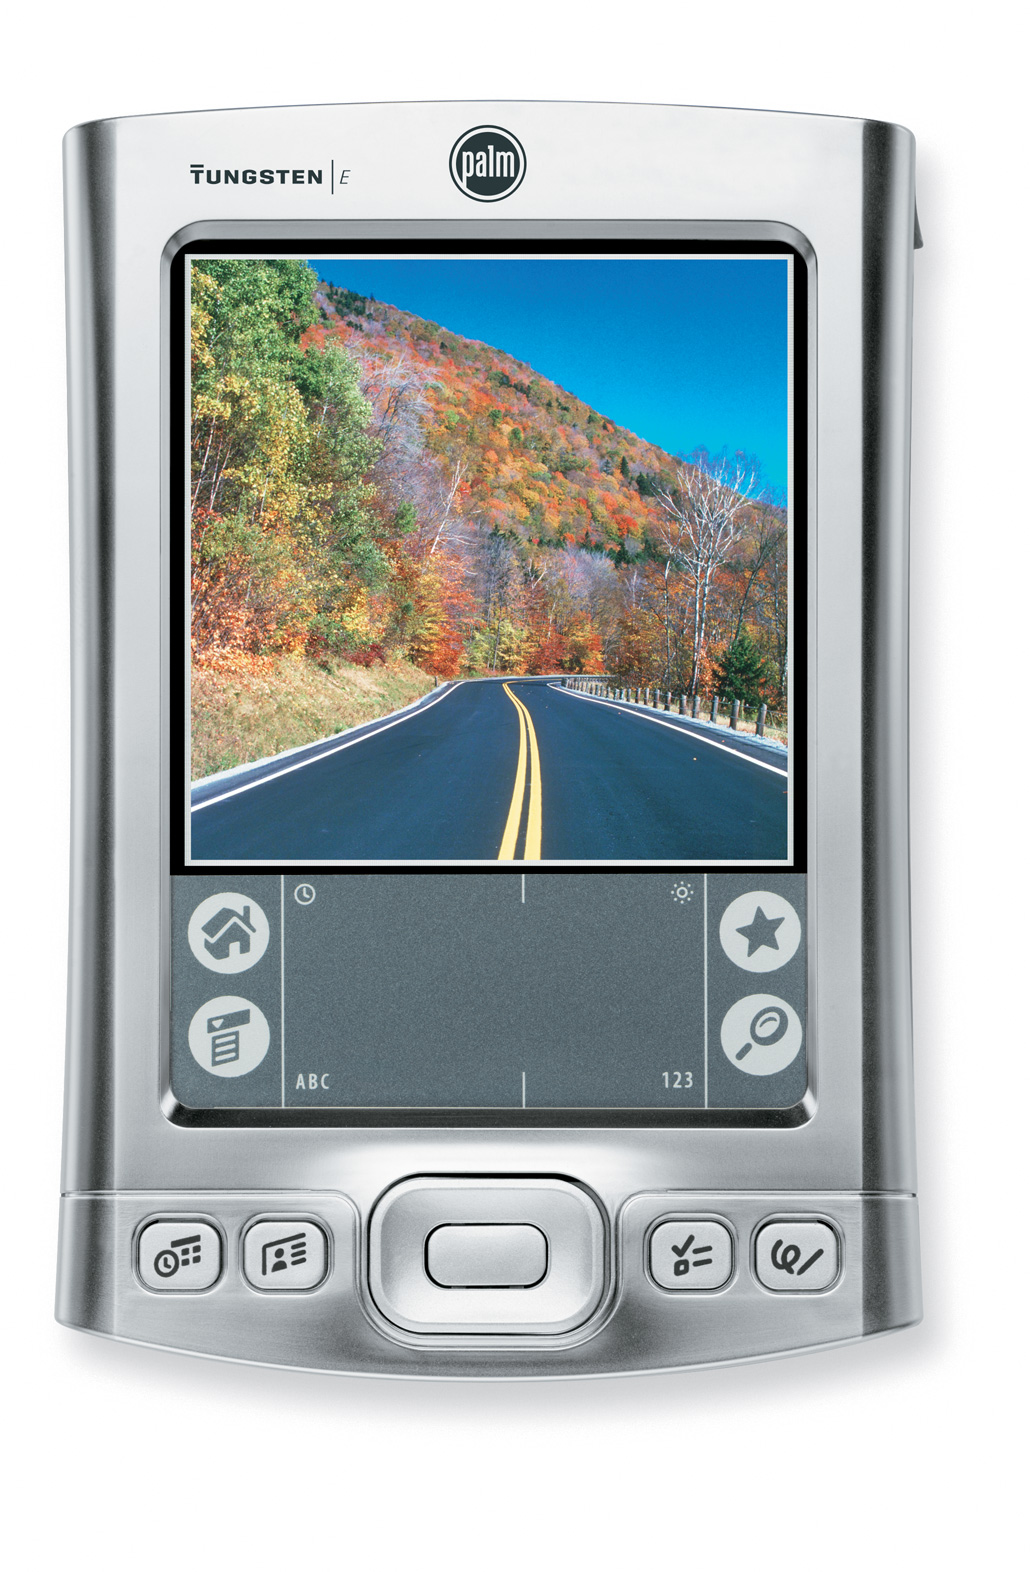 Palm Tungsten E2 - Palmtop Handheld PDA. Handheld PDA, Bluetooth, Sistema Operacional Palm OS Garnet v 5.4, 128MB. Compatível com Impressora Portátil Datecs PP-55 e toda linha de impressoras portáteis Interface Bluetooth.